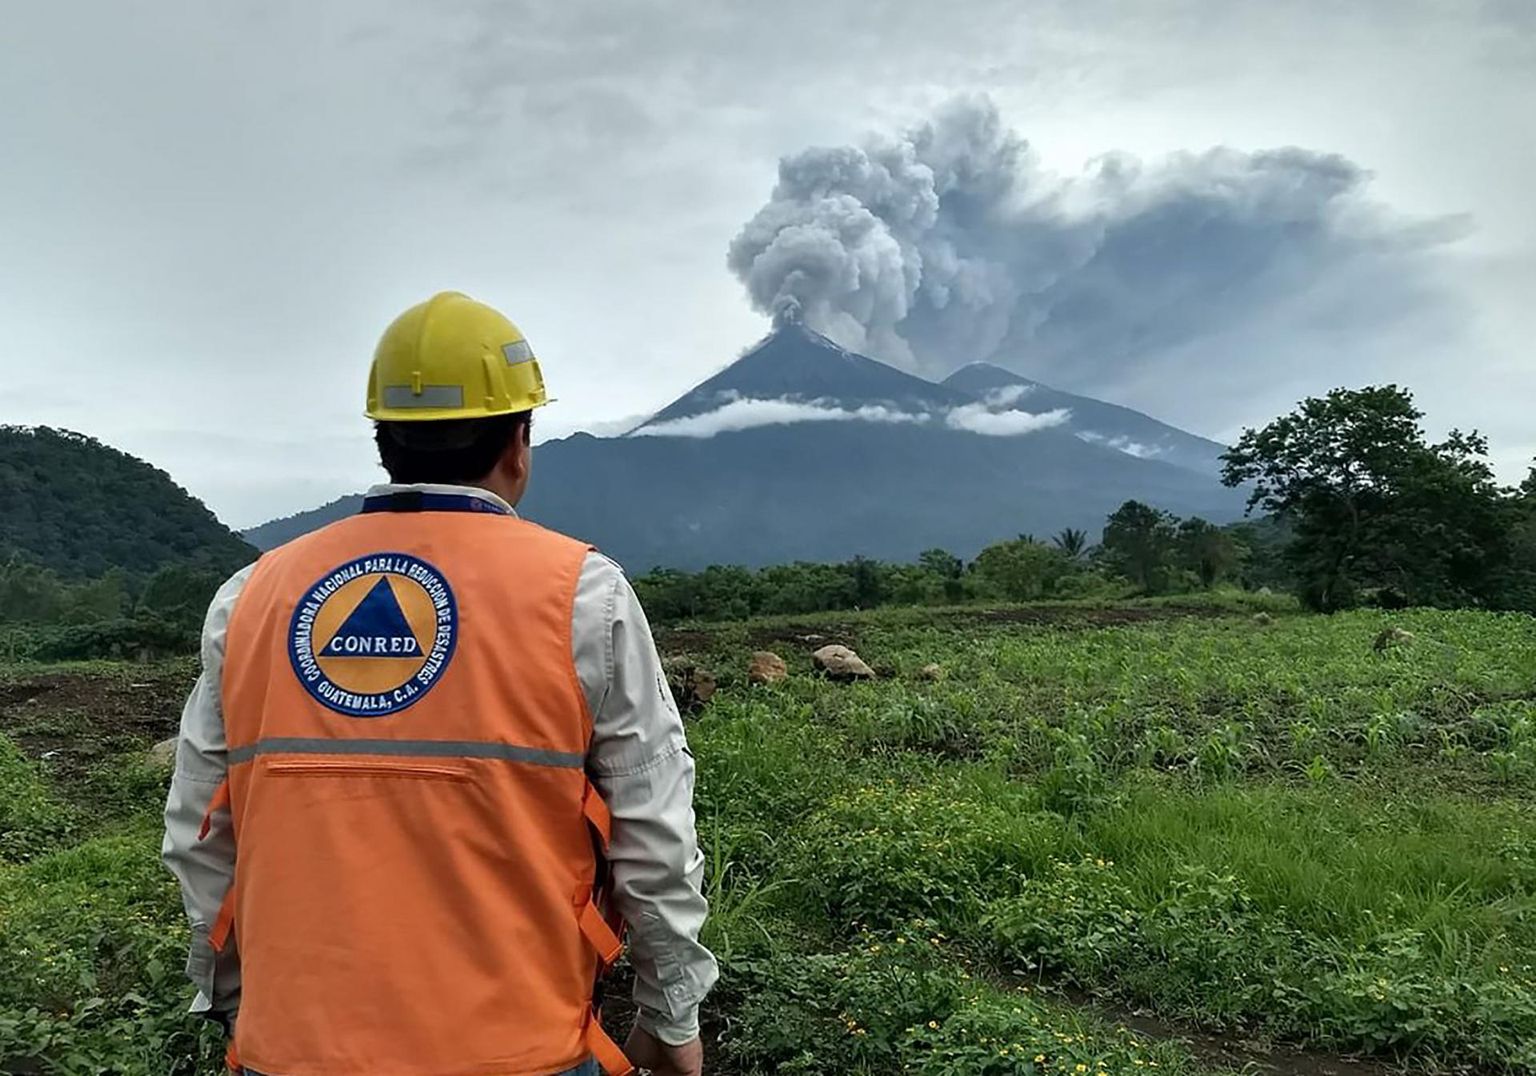 Fuego vulkaan on tänavu Guatemalas nõudnud üle saja inimelu, kuid umbes 200 inimese saatus pole teada. FOTO: AFP/SCANPIX